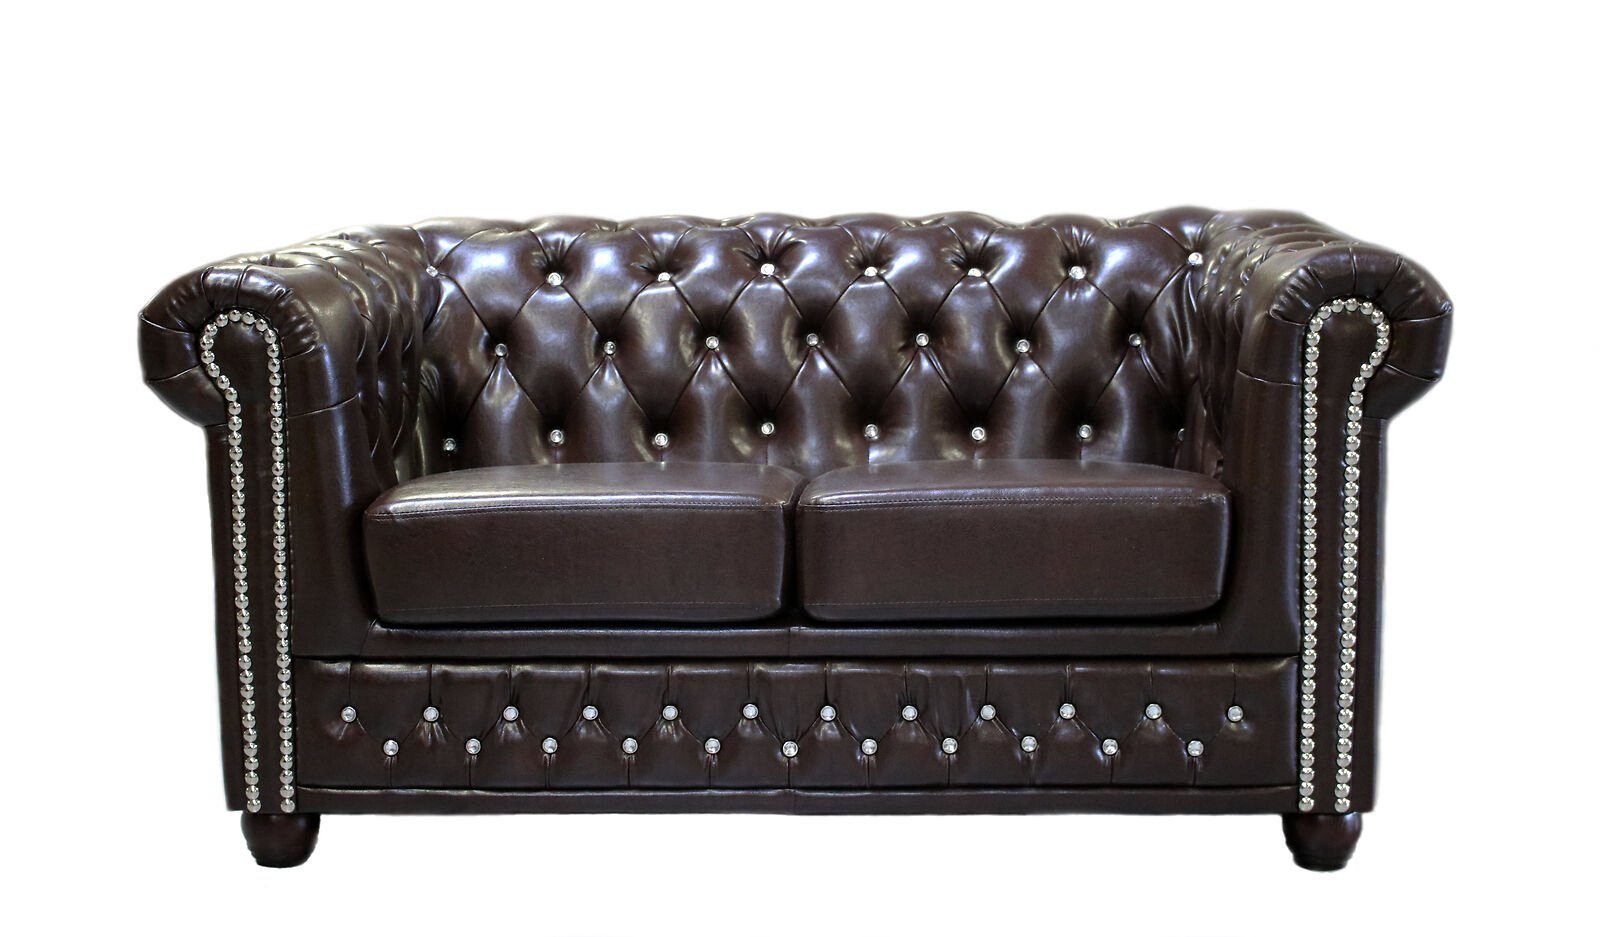 JVmoebel Sofa Klassischer Edler Zweisitzer Chesterfield Möbel Couch Textil Neu, Made in Europe